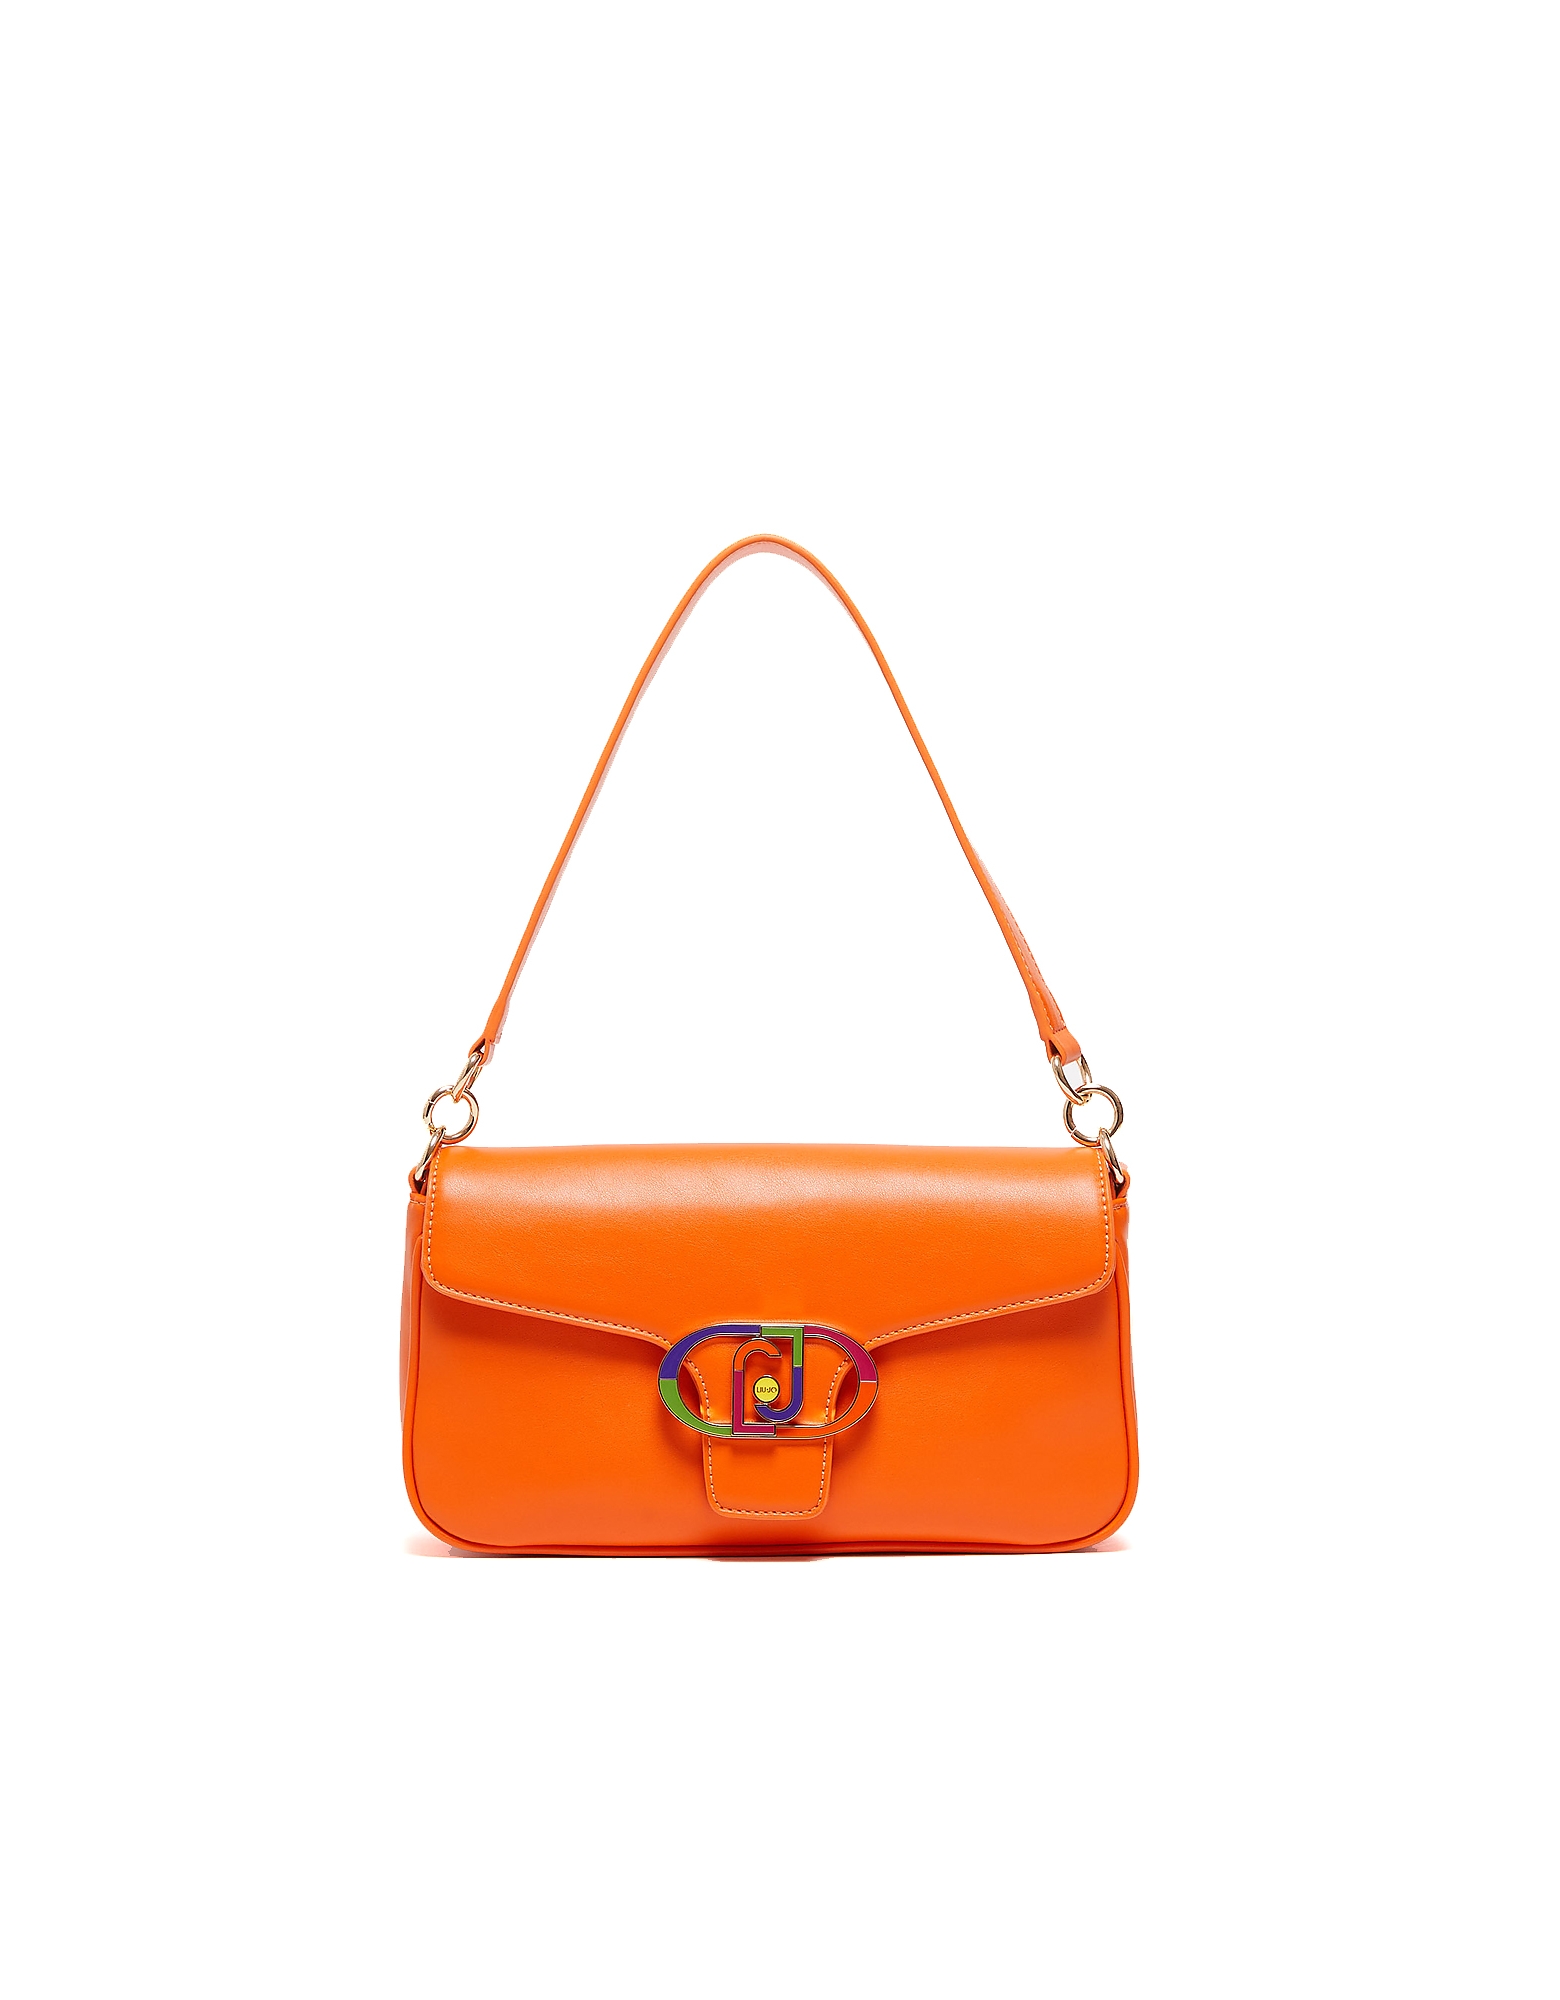 Liu •jo Designer Handbags Women's Orange Bag